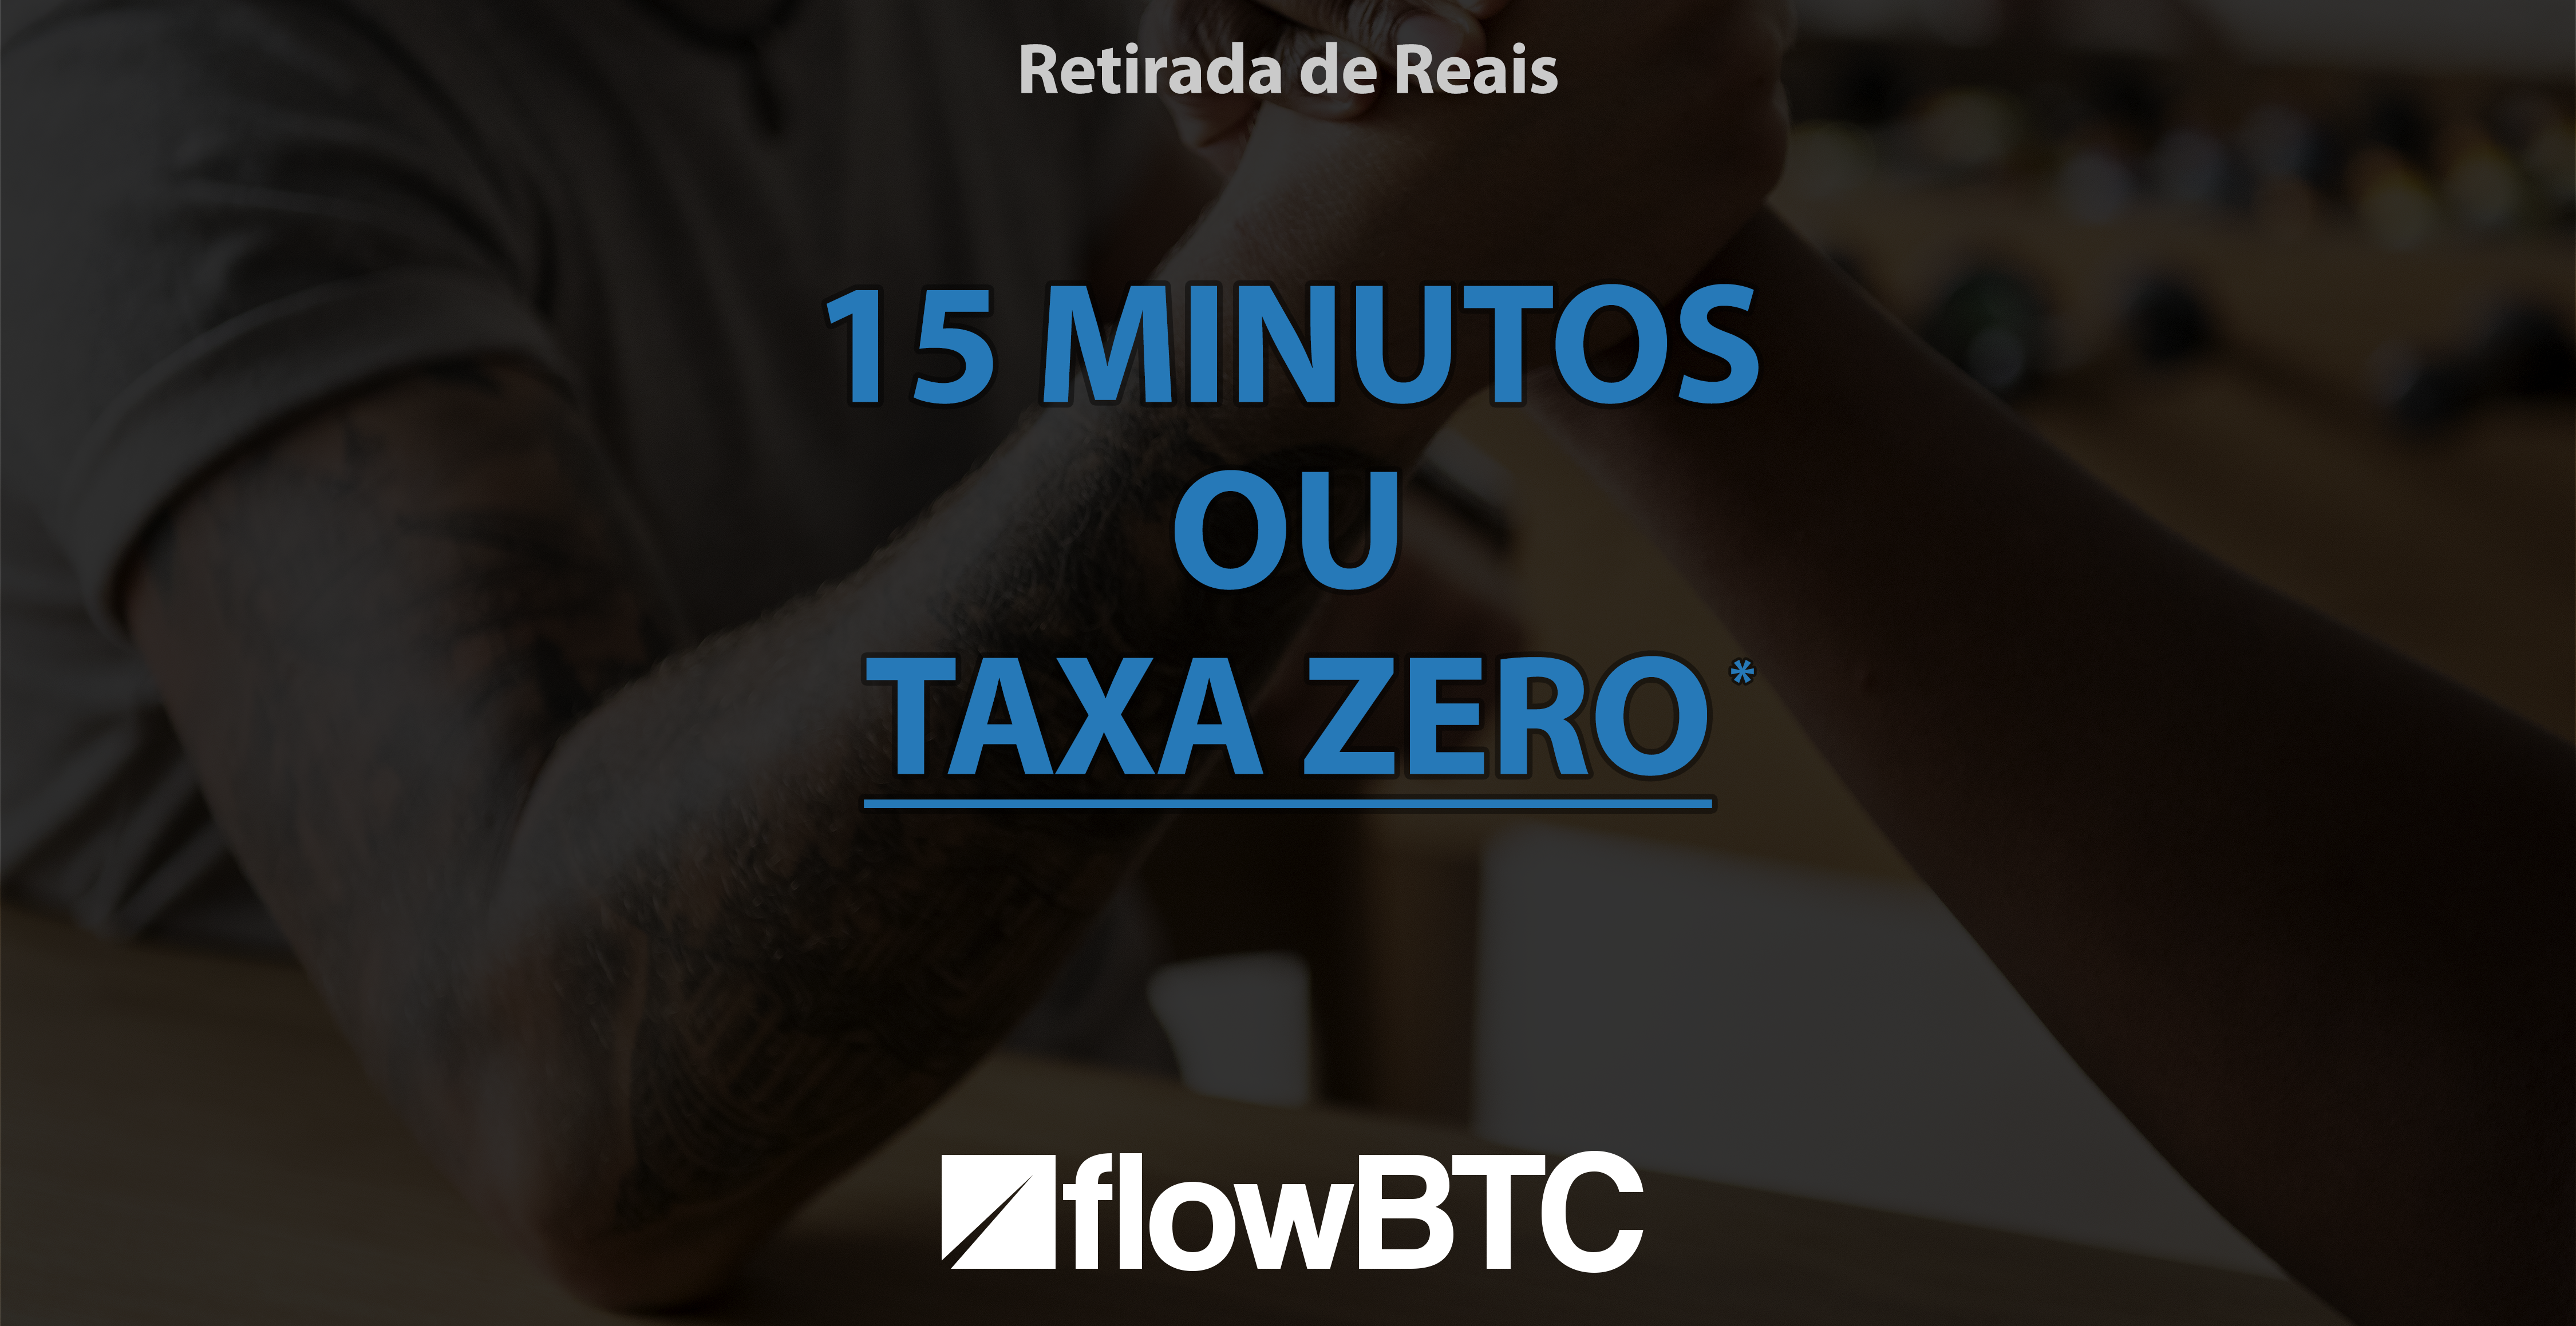 Desafio FlowBTC : Sua retirada de reais em 15 minutos ou TAXA ZERO